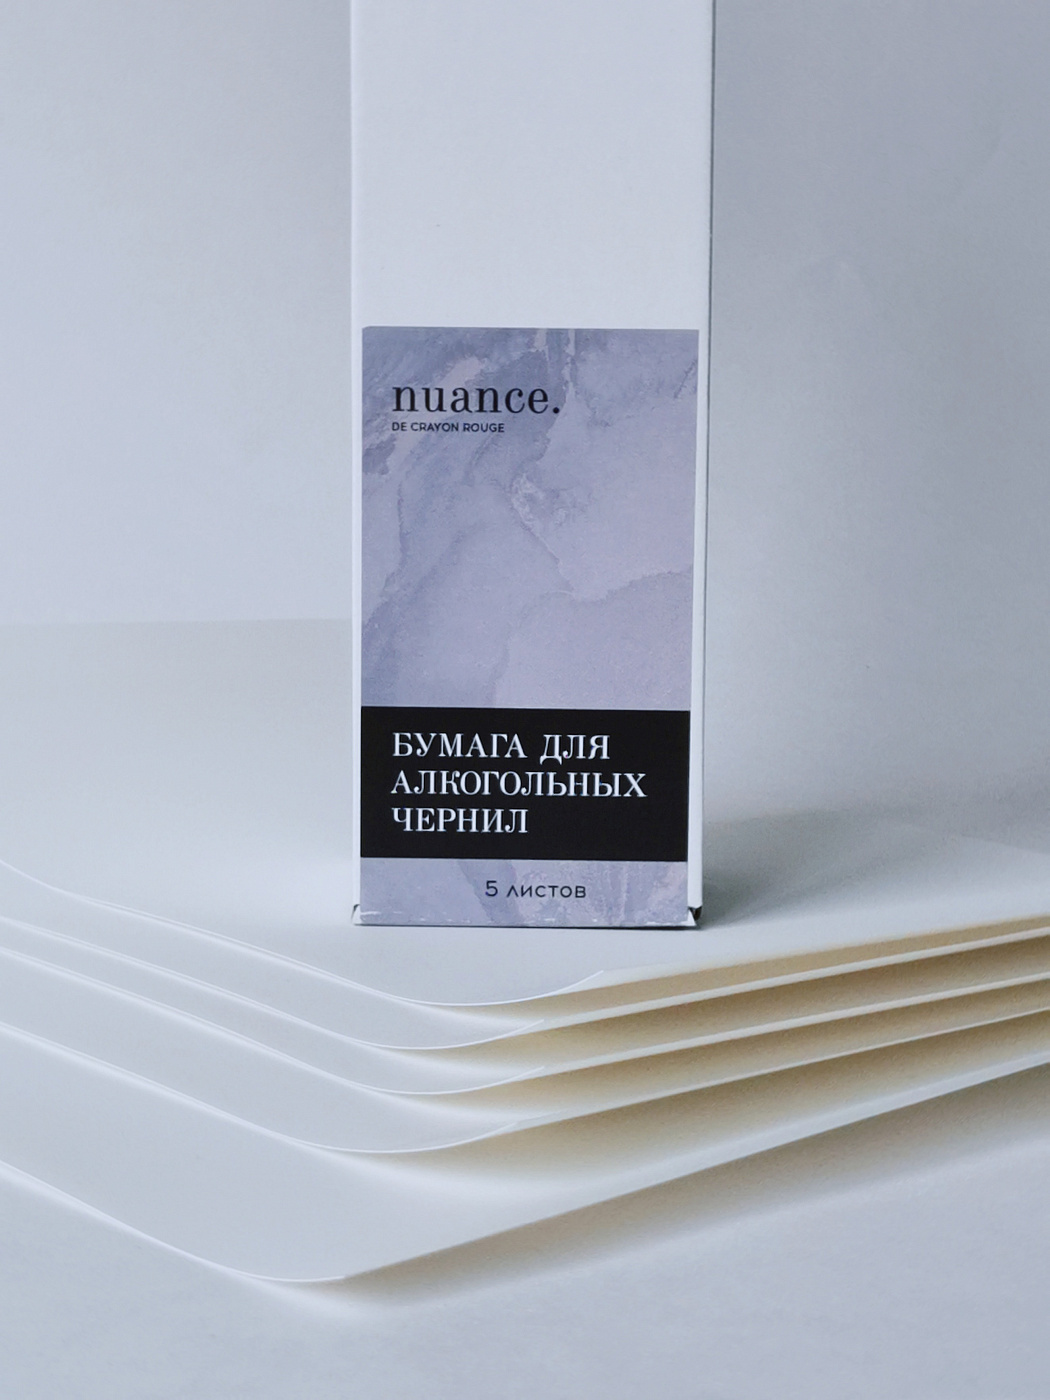 Набор бумаги синтетической (для алкогольных чернил), nuance., 23 х 35 см, 5 листов бумага svetocopy а4 500 листов